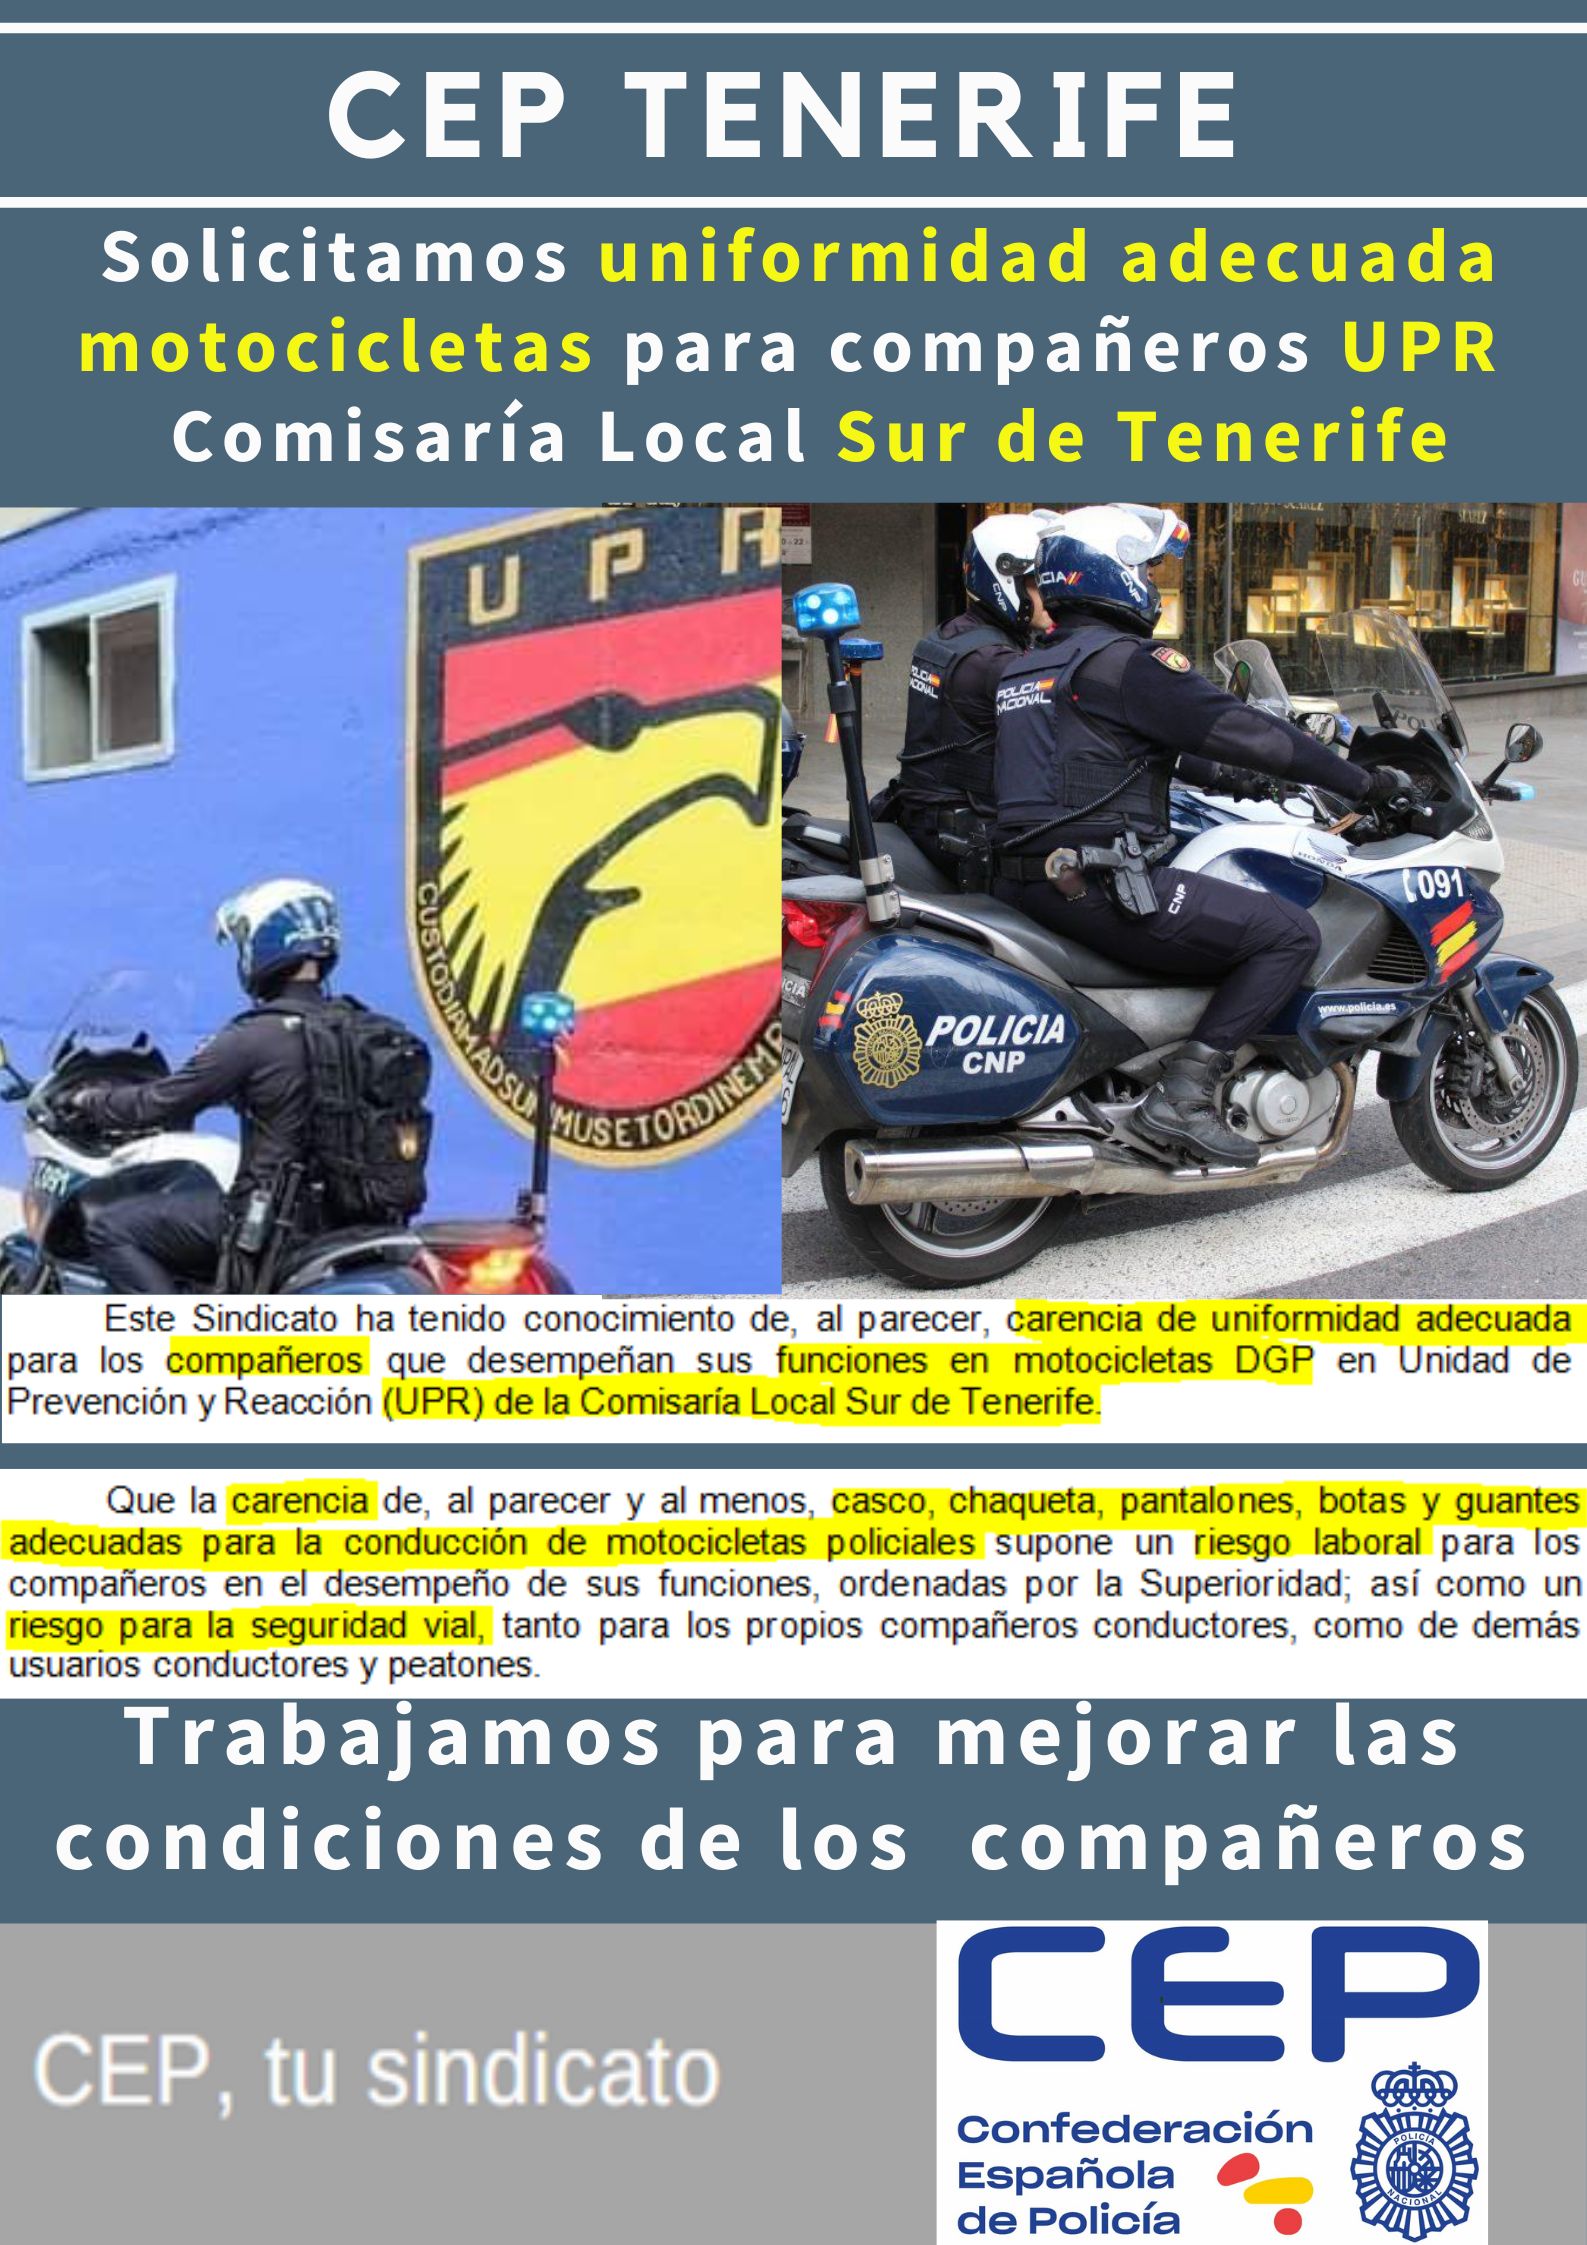 Solicitamos uniformidad adecuada motocicletas para compañeros UPR Sur de Tenerife